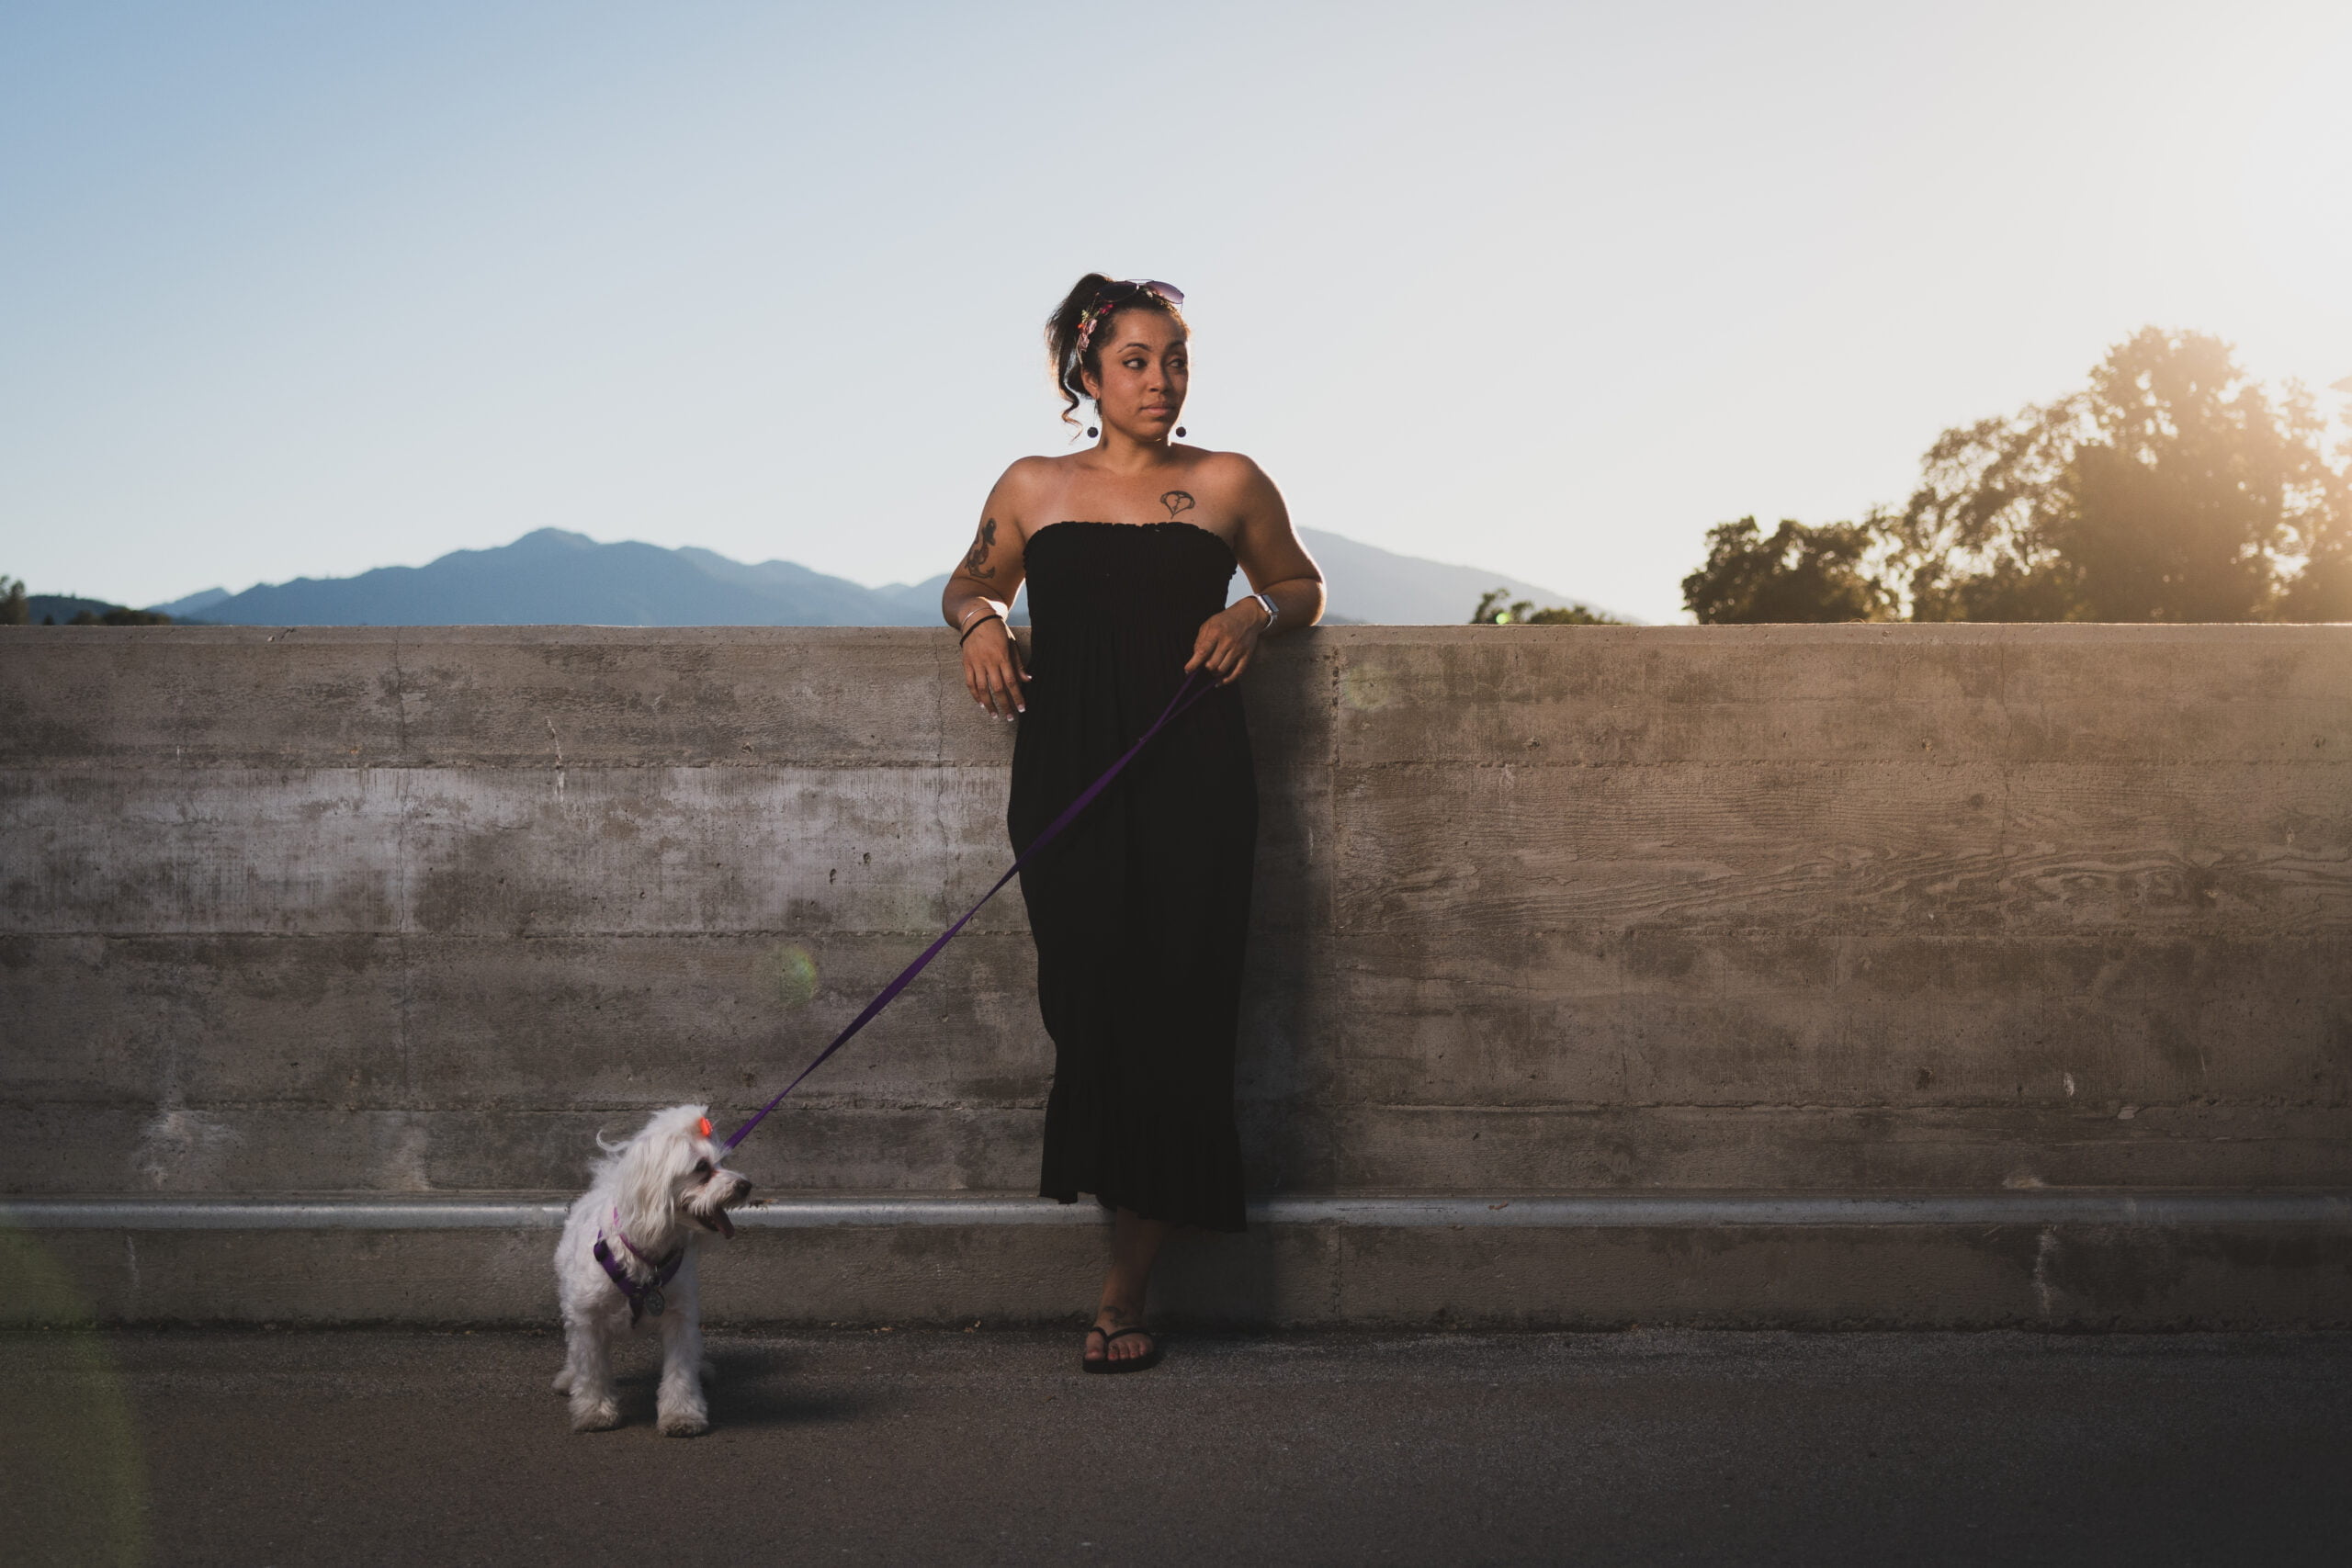 Cherish Padro with her dog Bella